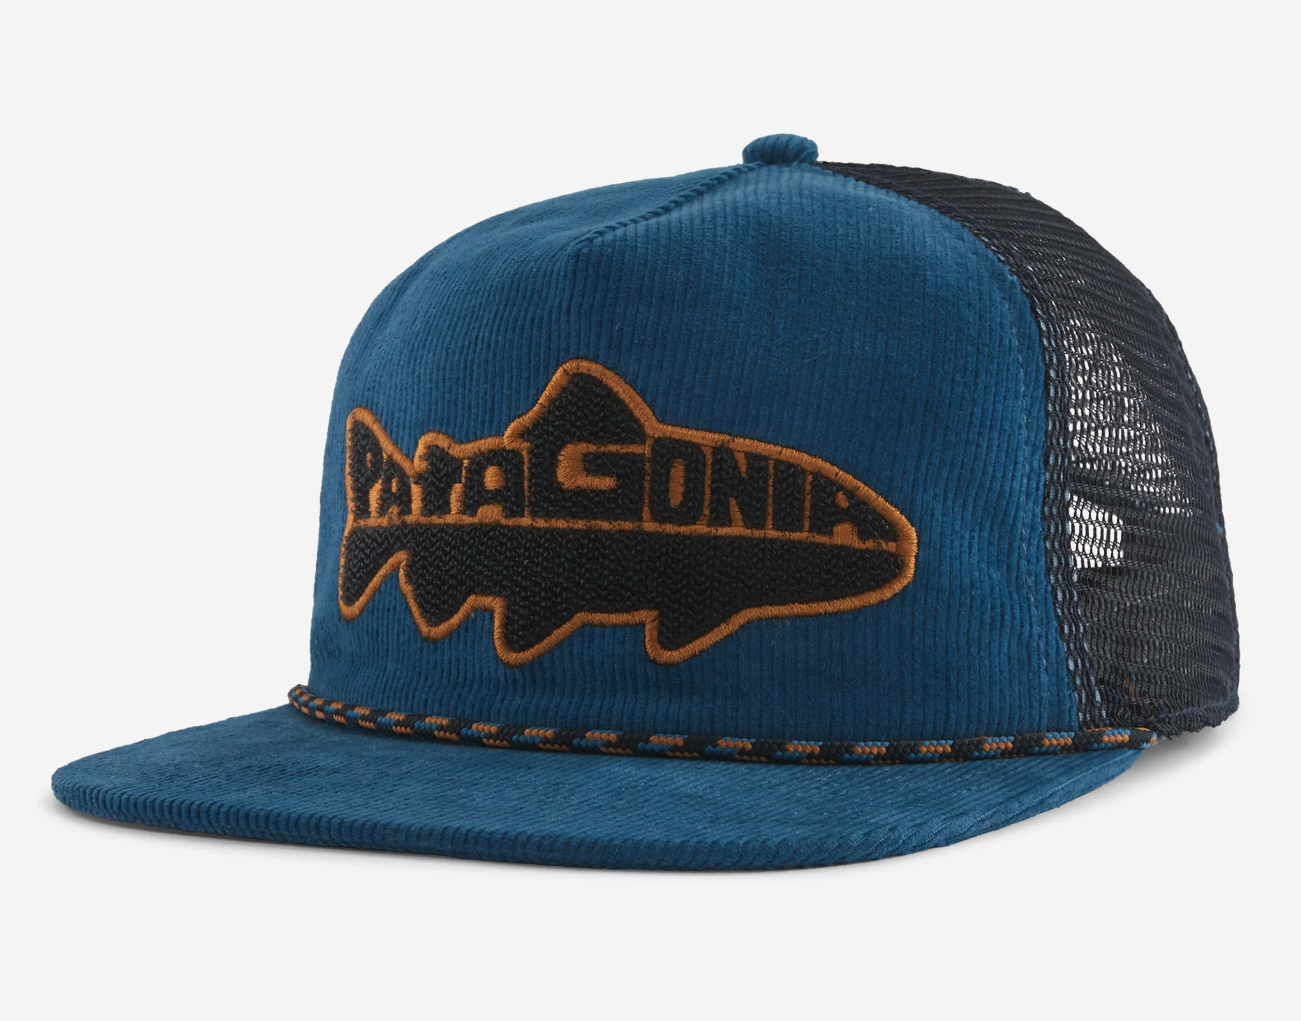 Patagonia Fitz roy blue fishing hat